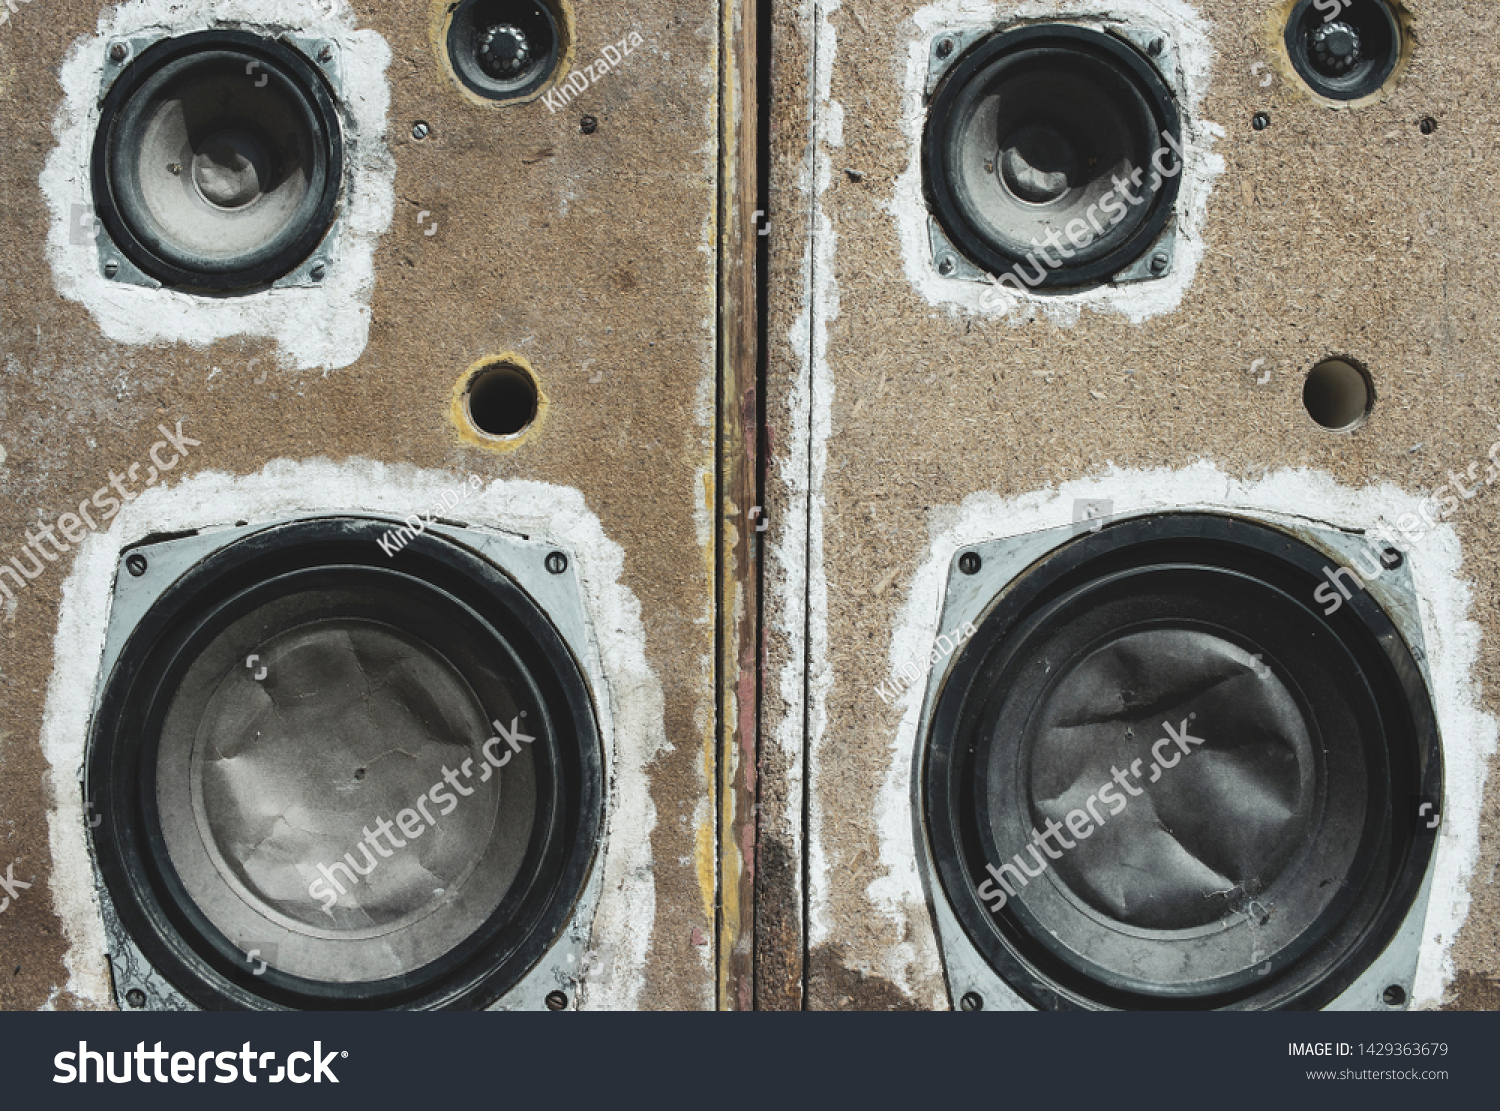 Old Soviet music speakers. Crumpled speakers. #1429363679